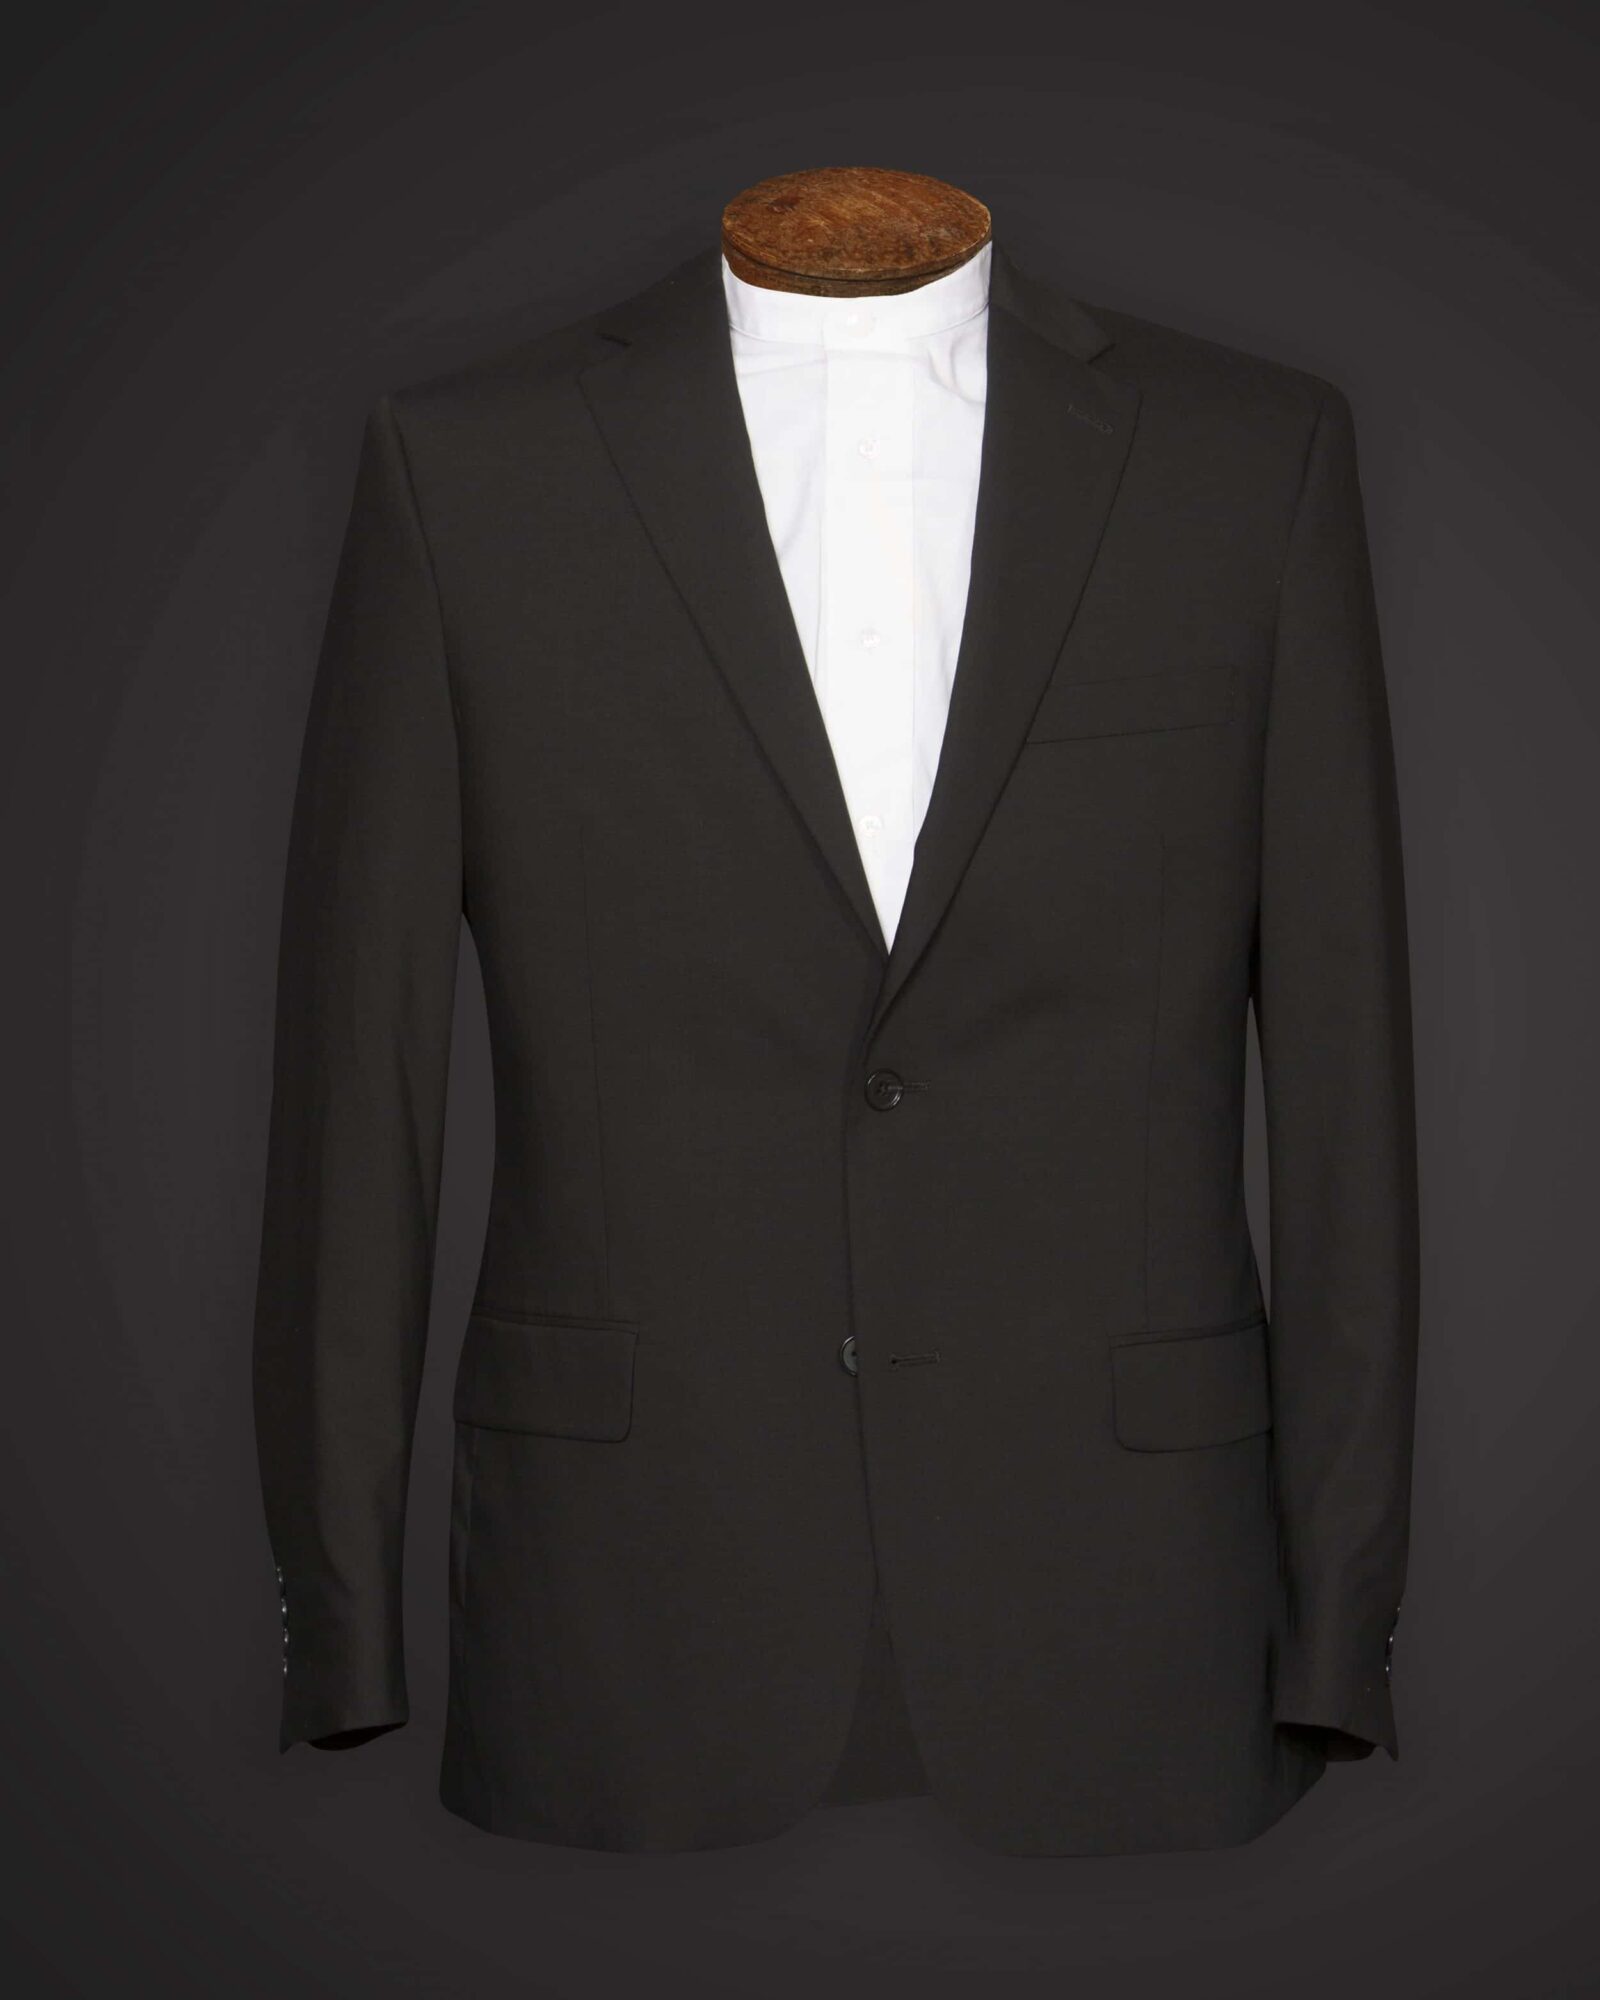 Lightweight Suit, 100% Wool